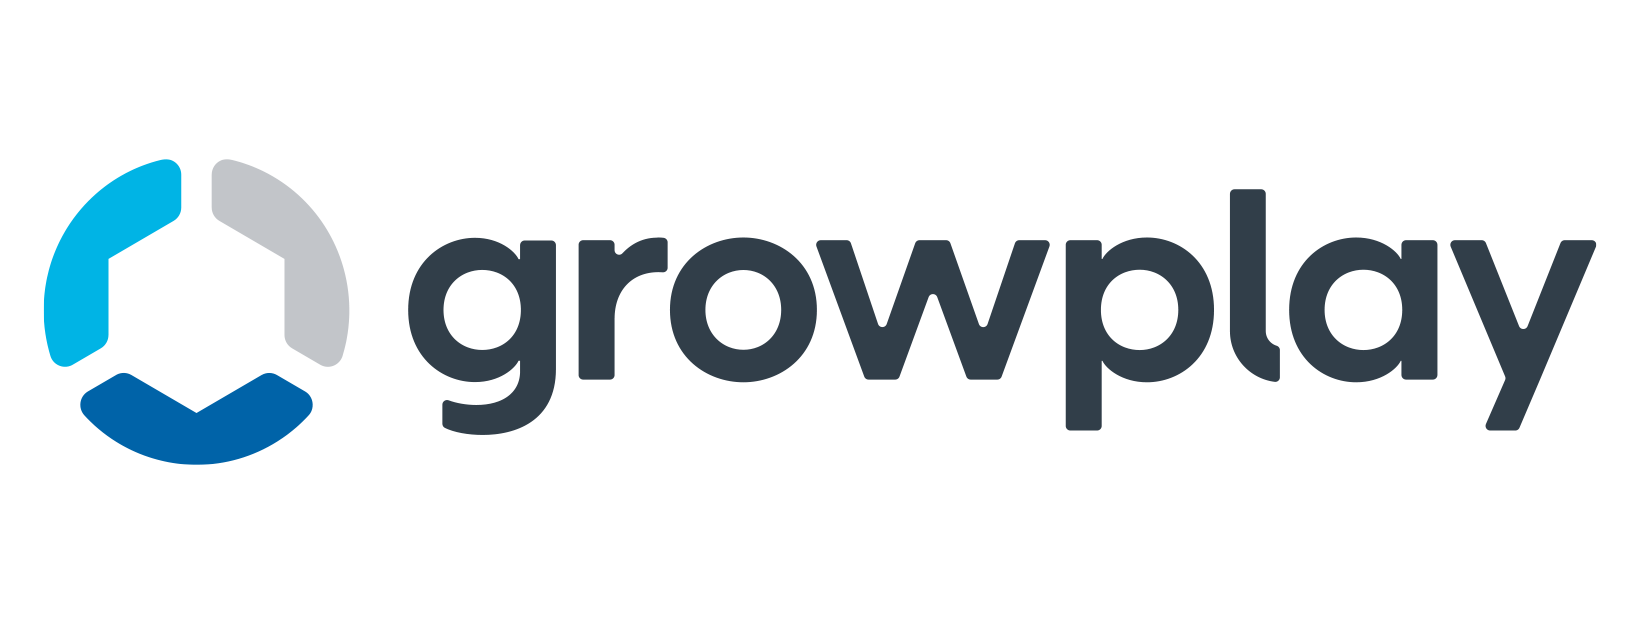 Growplay UK logo